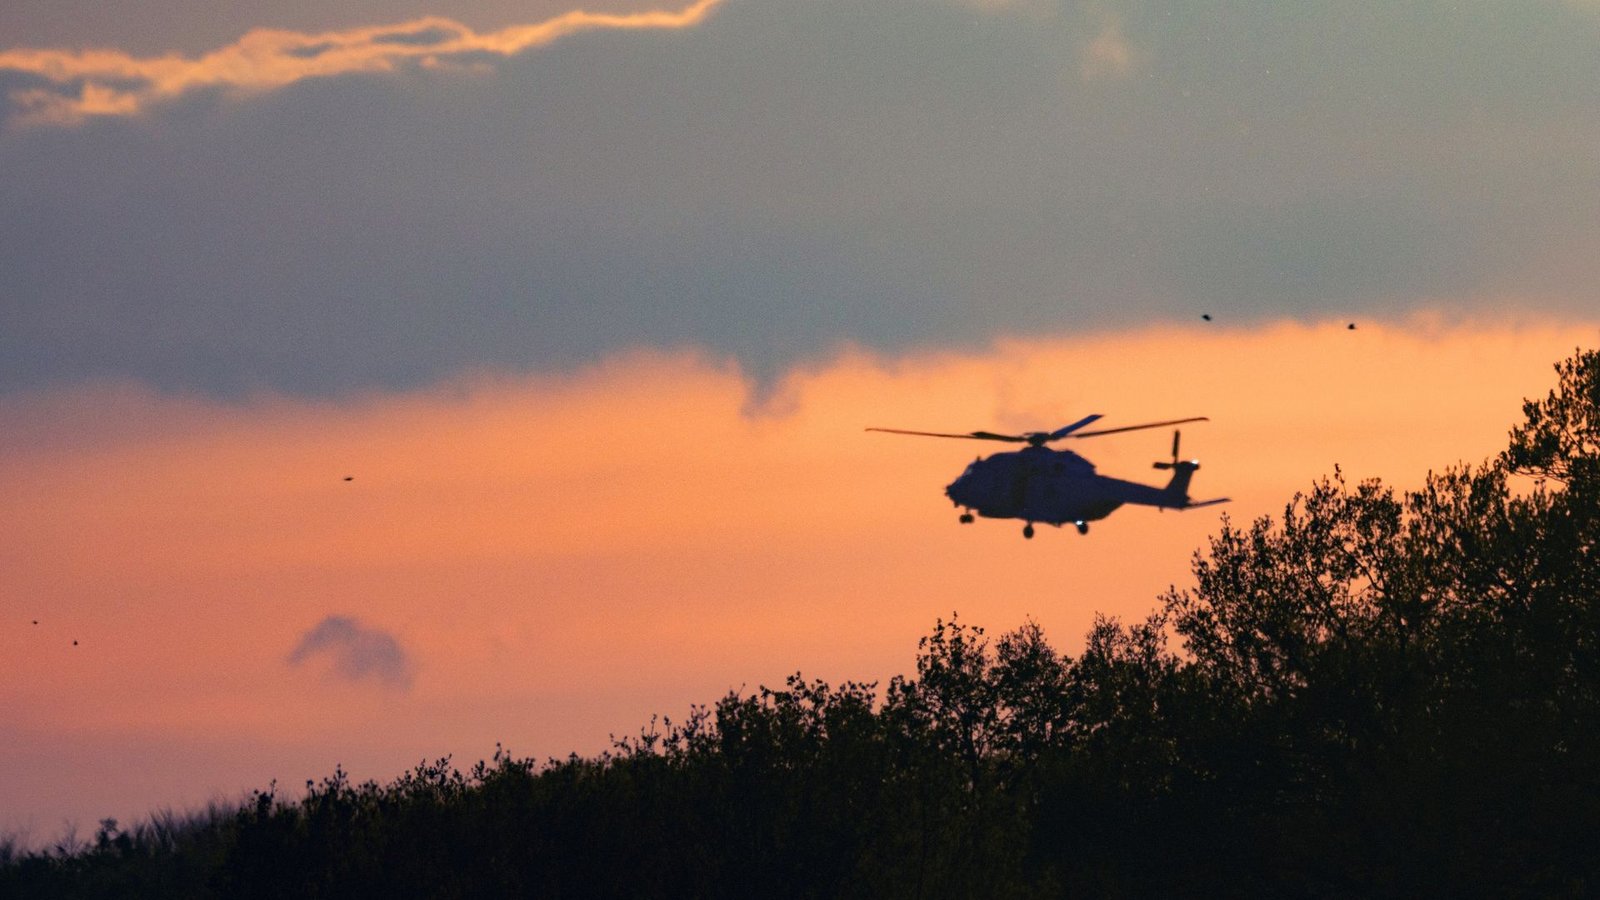 Die Bundeswehr beteiligt sich seit Tagen an der Suche nach Arian - etwa mit einem Tornado-Flugzeug, Drohnen und einem Hubschrauber.Foto: Markus Hibbeler/dpa